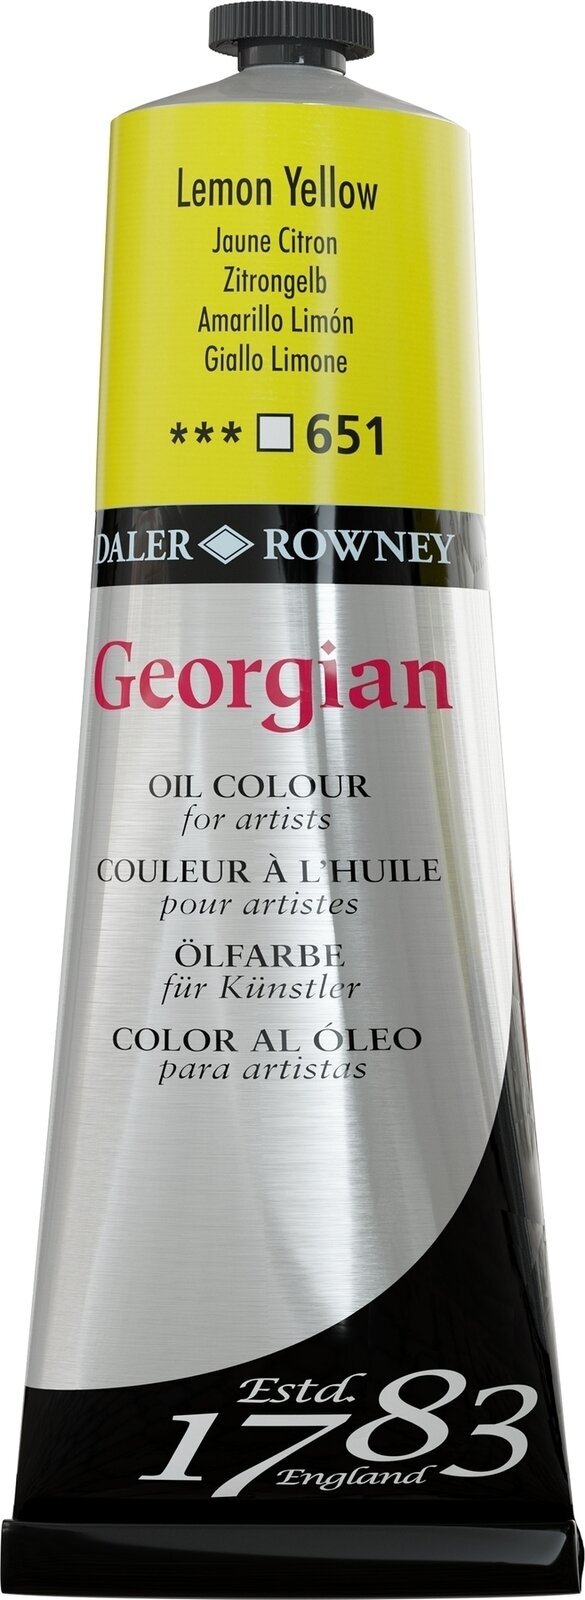 Aceite de colores Daler Rowney Georgian Oil Paint Lemon Yellow 225 ml 1 pc